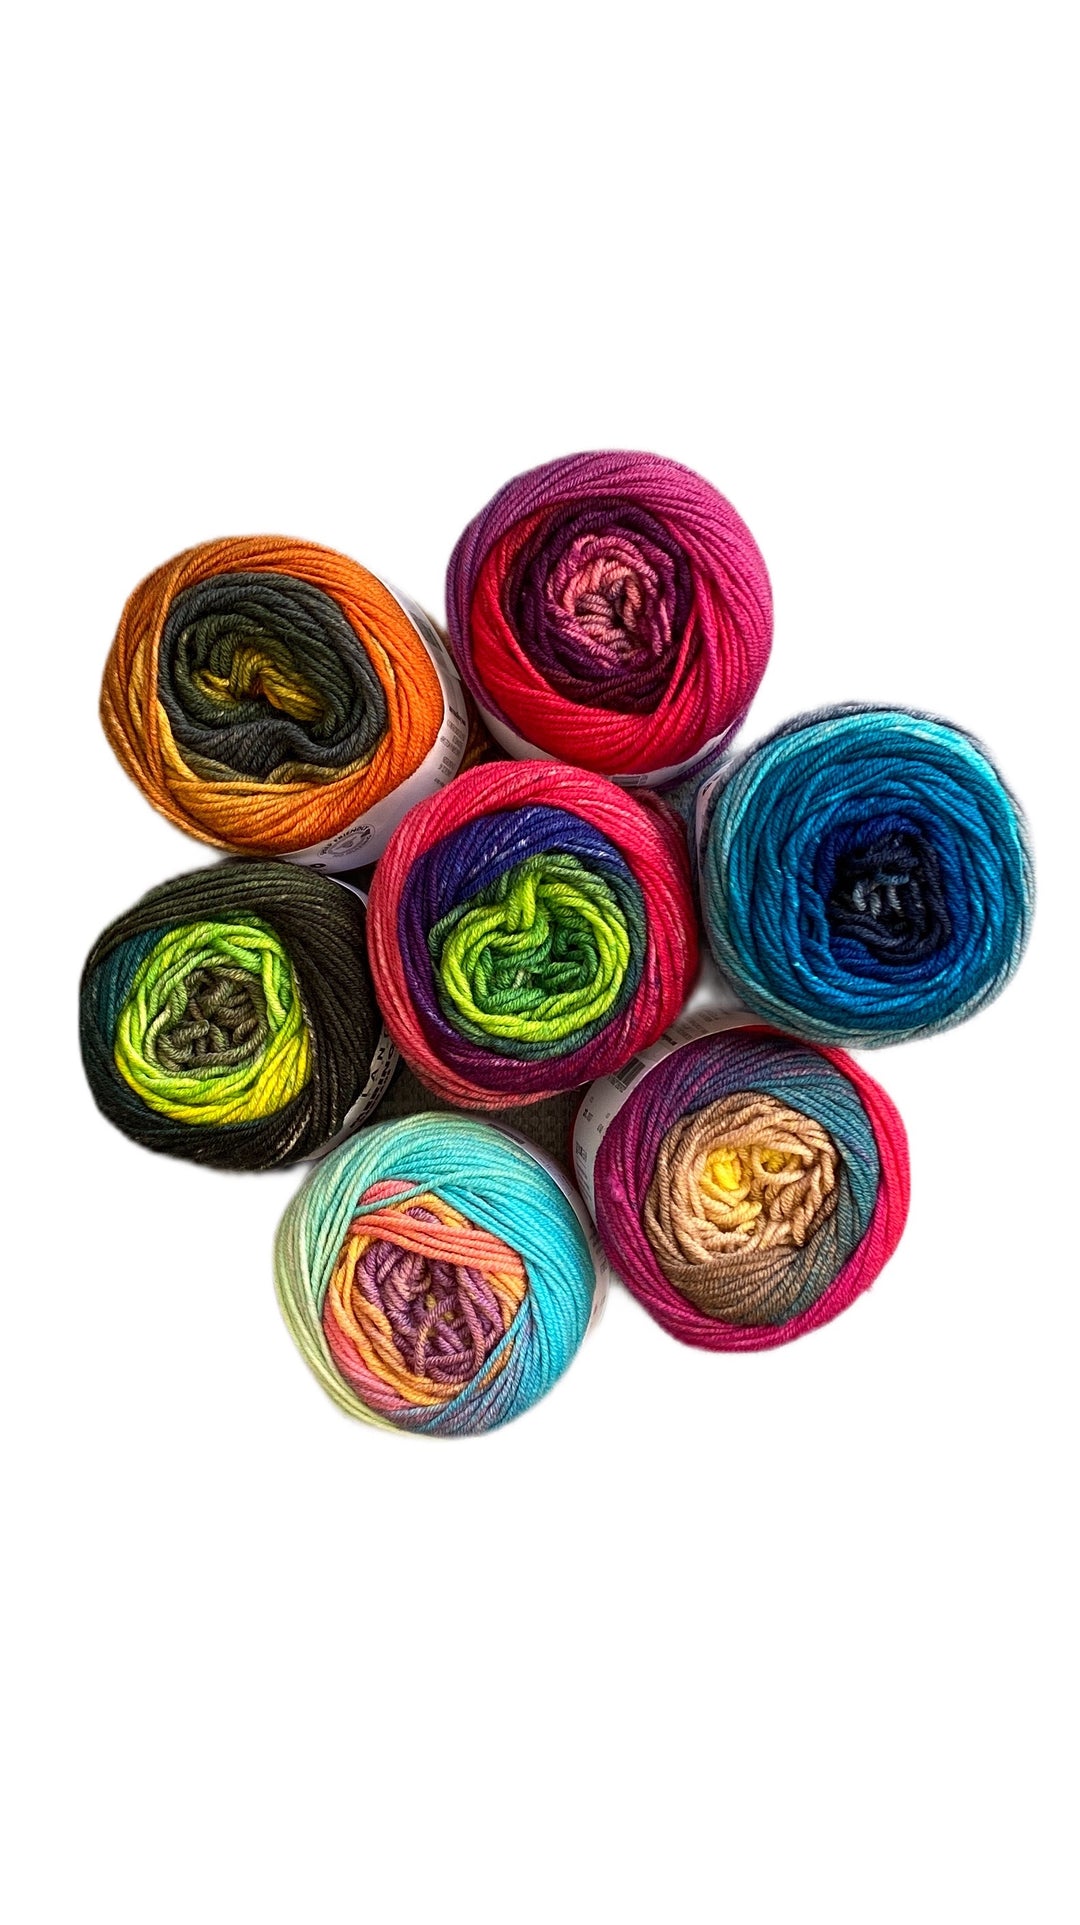 Le KIT tricot pour l'écharpe Mérinos colorée - avec instructions